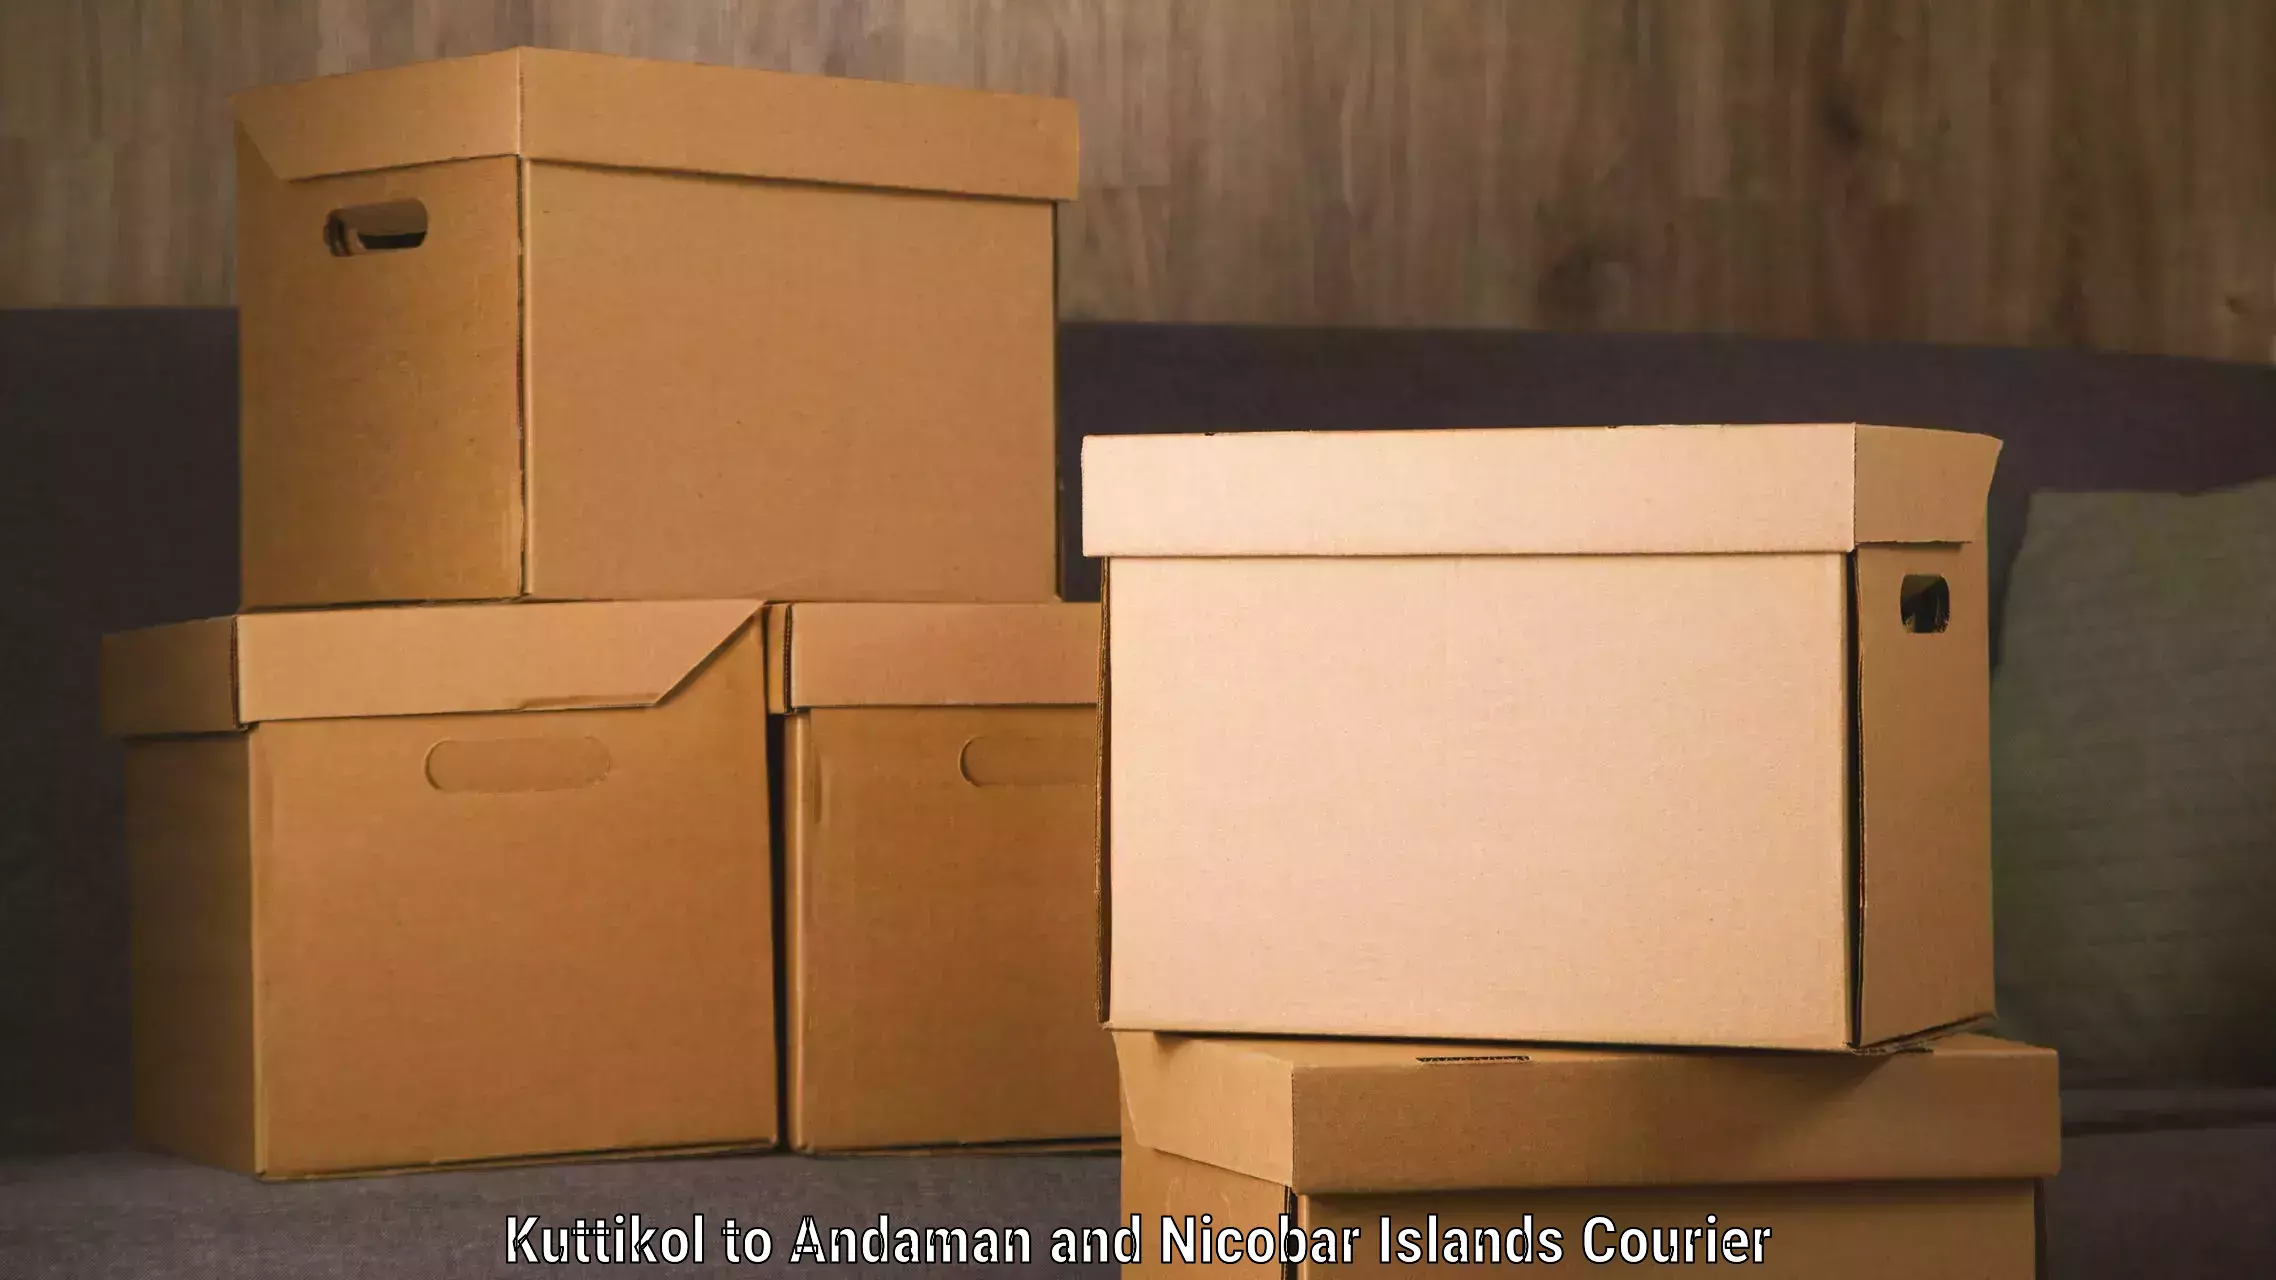 High-performance logistics Kuttikol to Andaman and Nicobar Islands